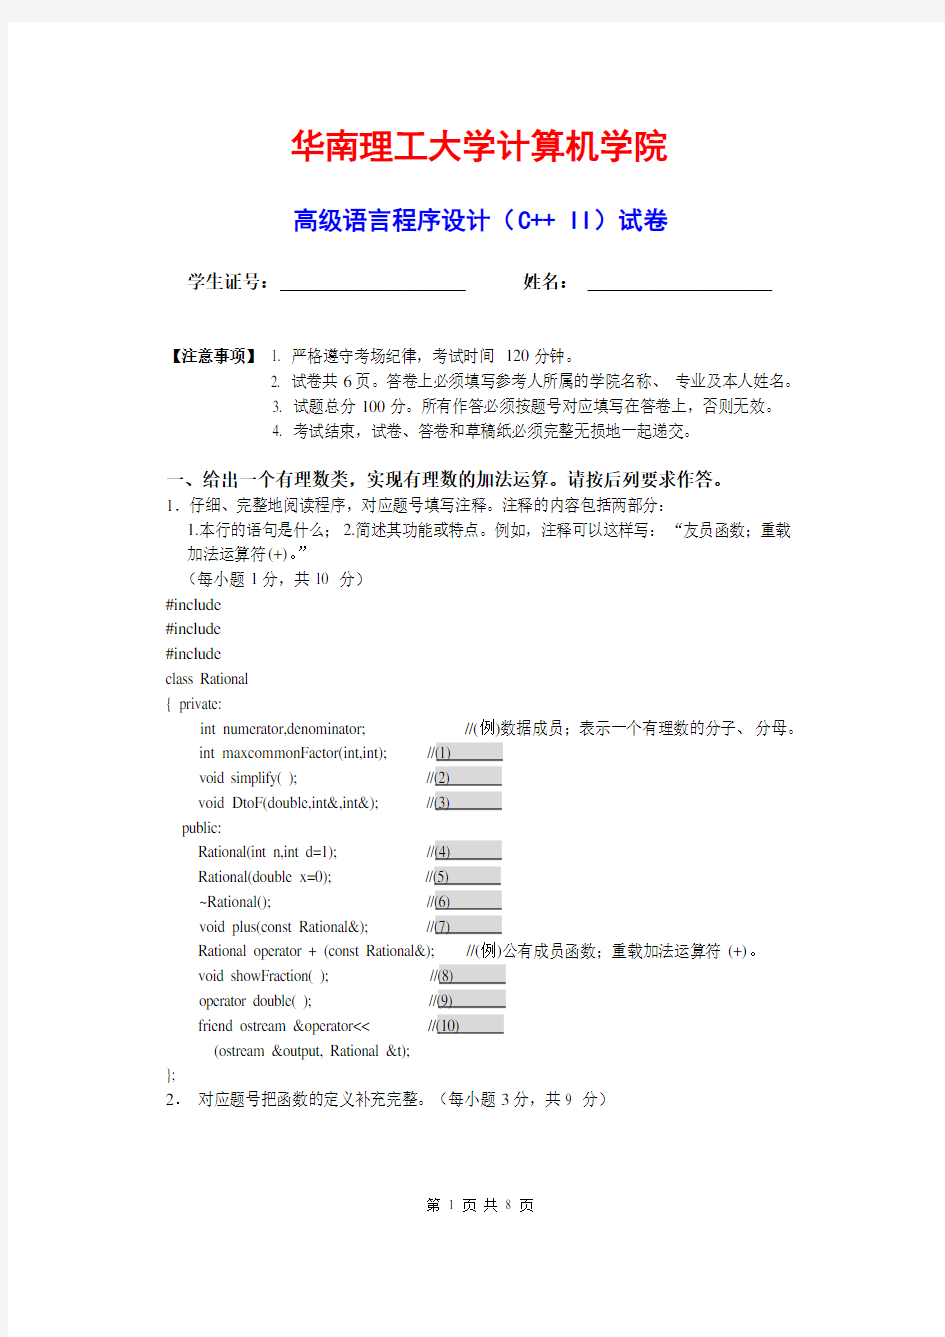 华南理工大学高级语言程序设计(C++ II)试卷及答案